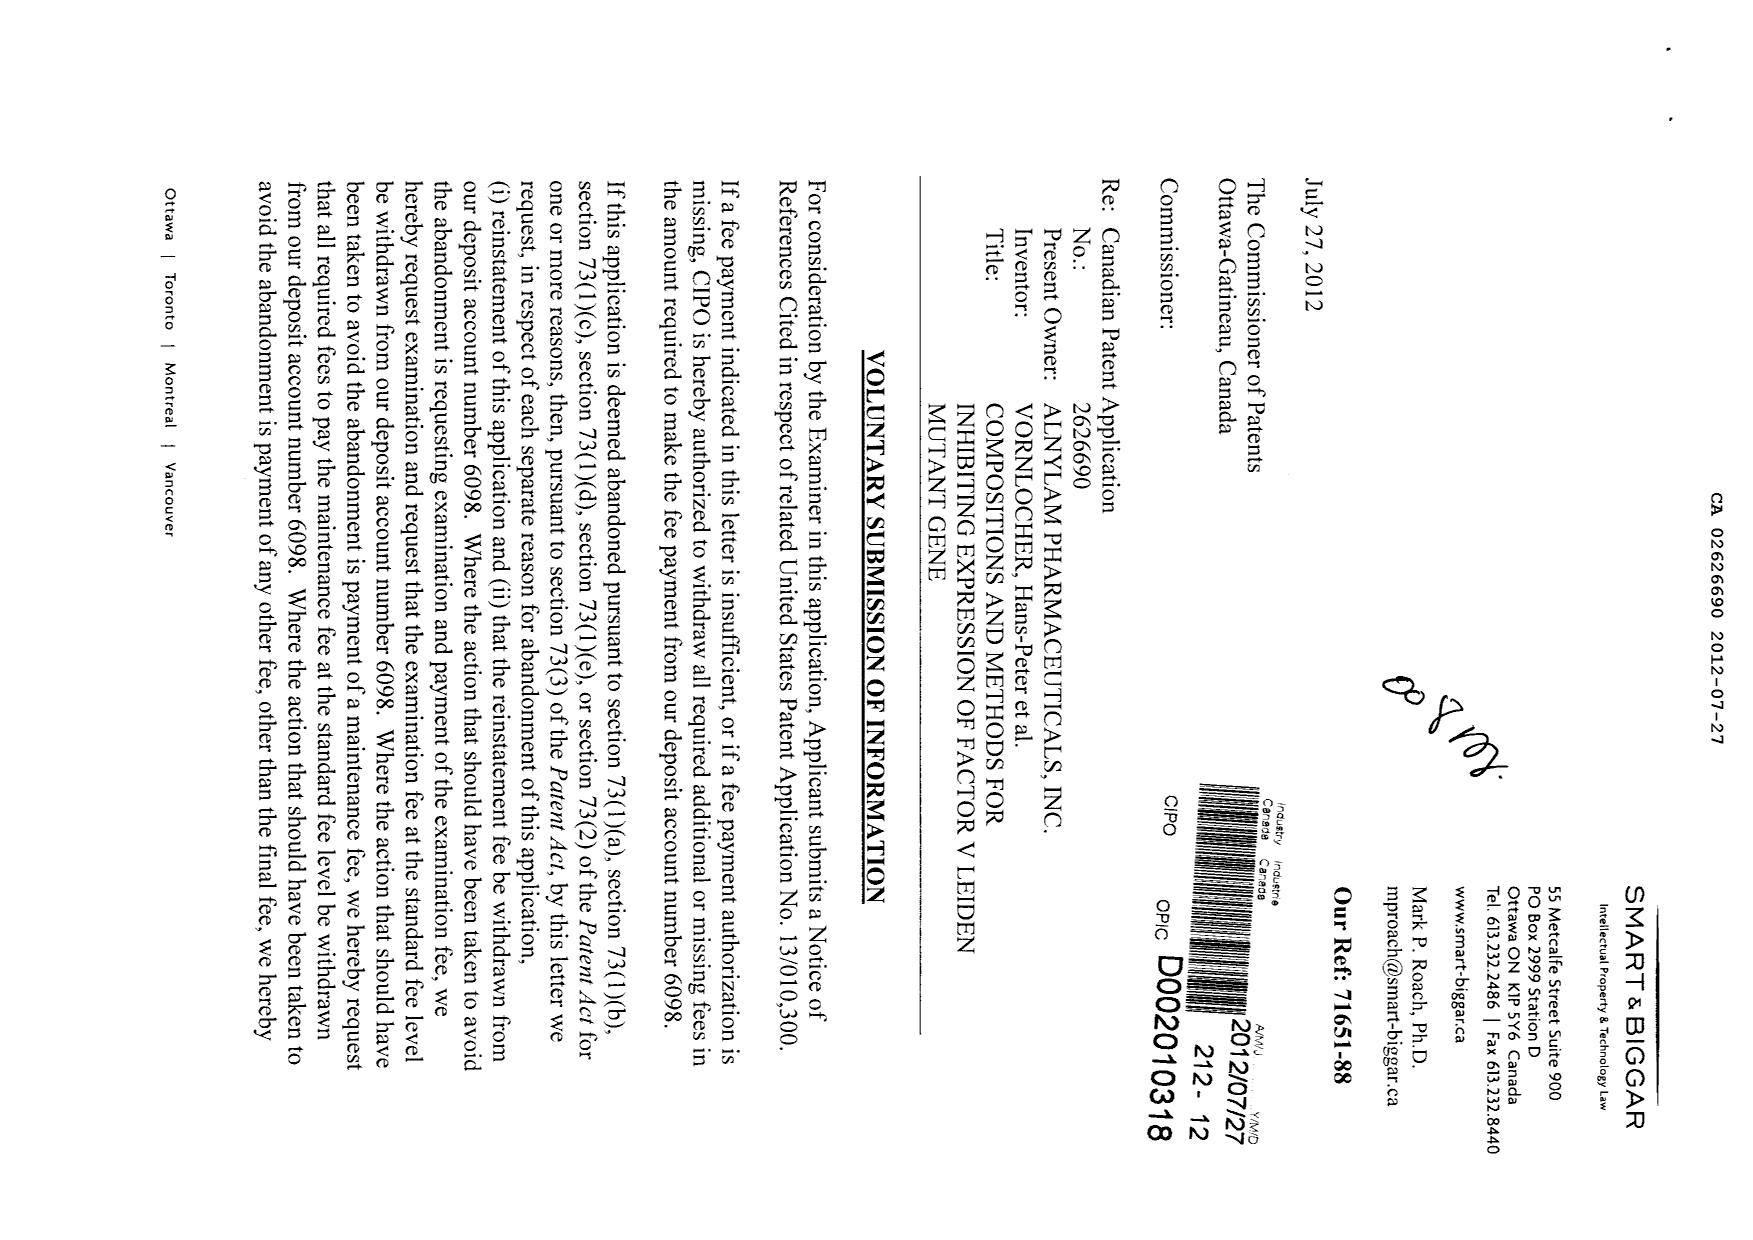 Document de brevet canadien 2626690. Poursuite-Amendment 20111227. Image 1 de 2